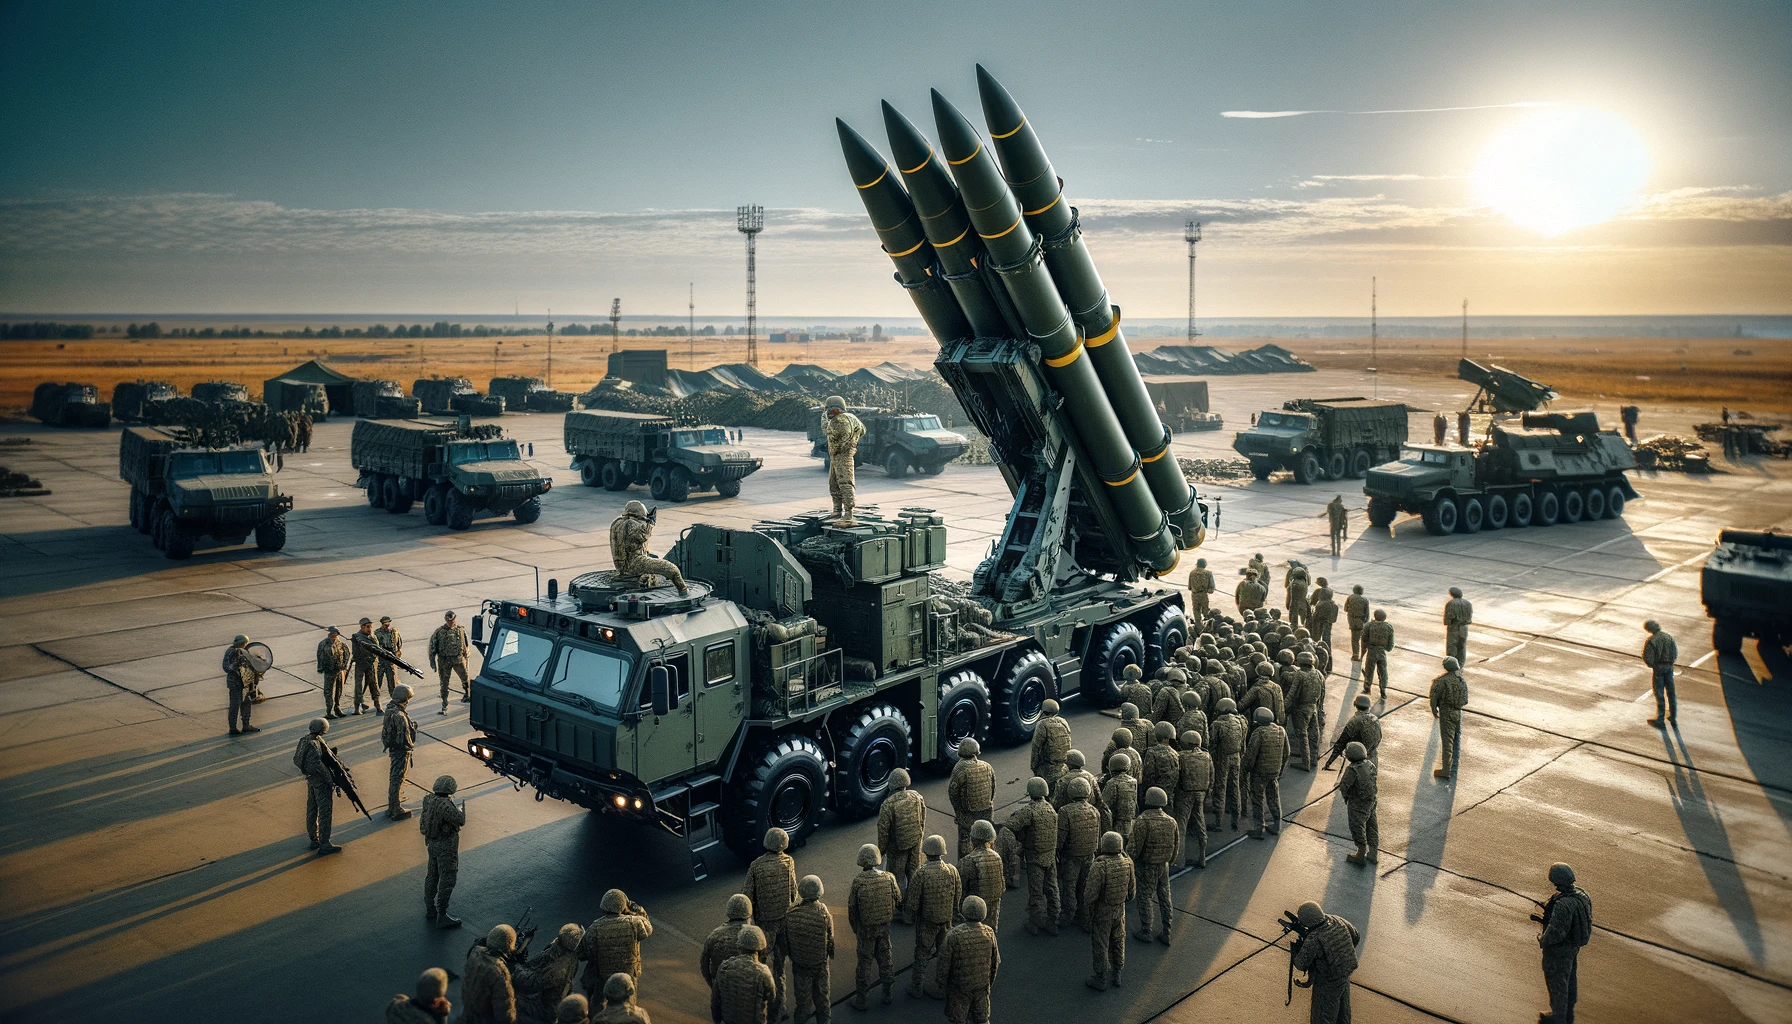 Nowe wyzwania dla Sił Zbrojnych Ukrainy: uzbrojenie zachodnie i problemy z wywiadem